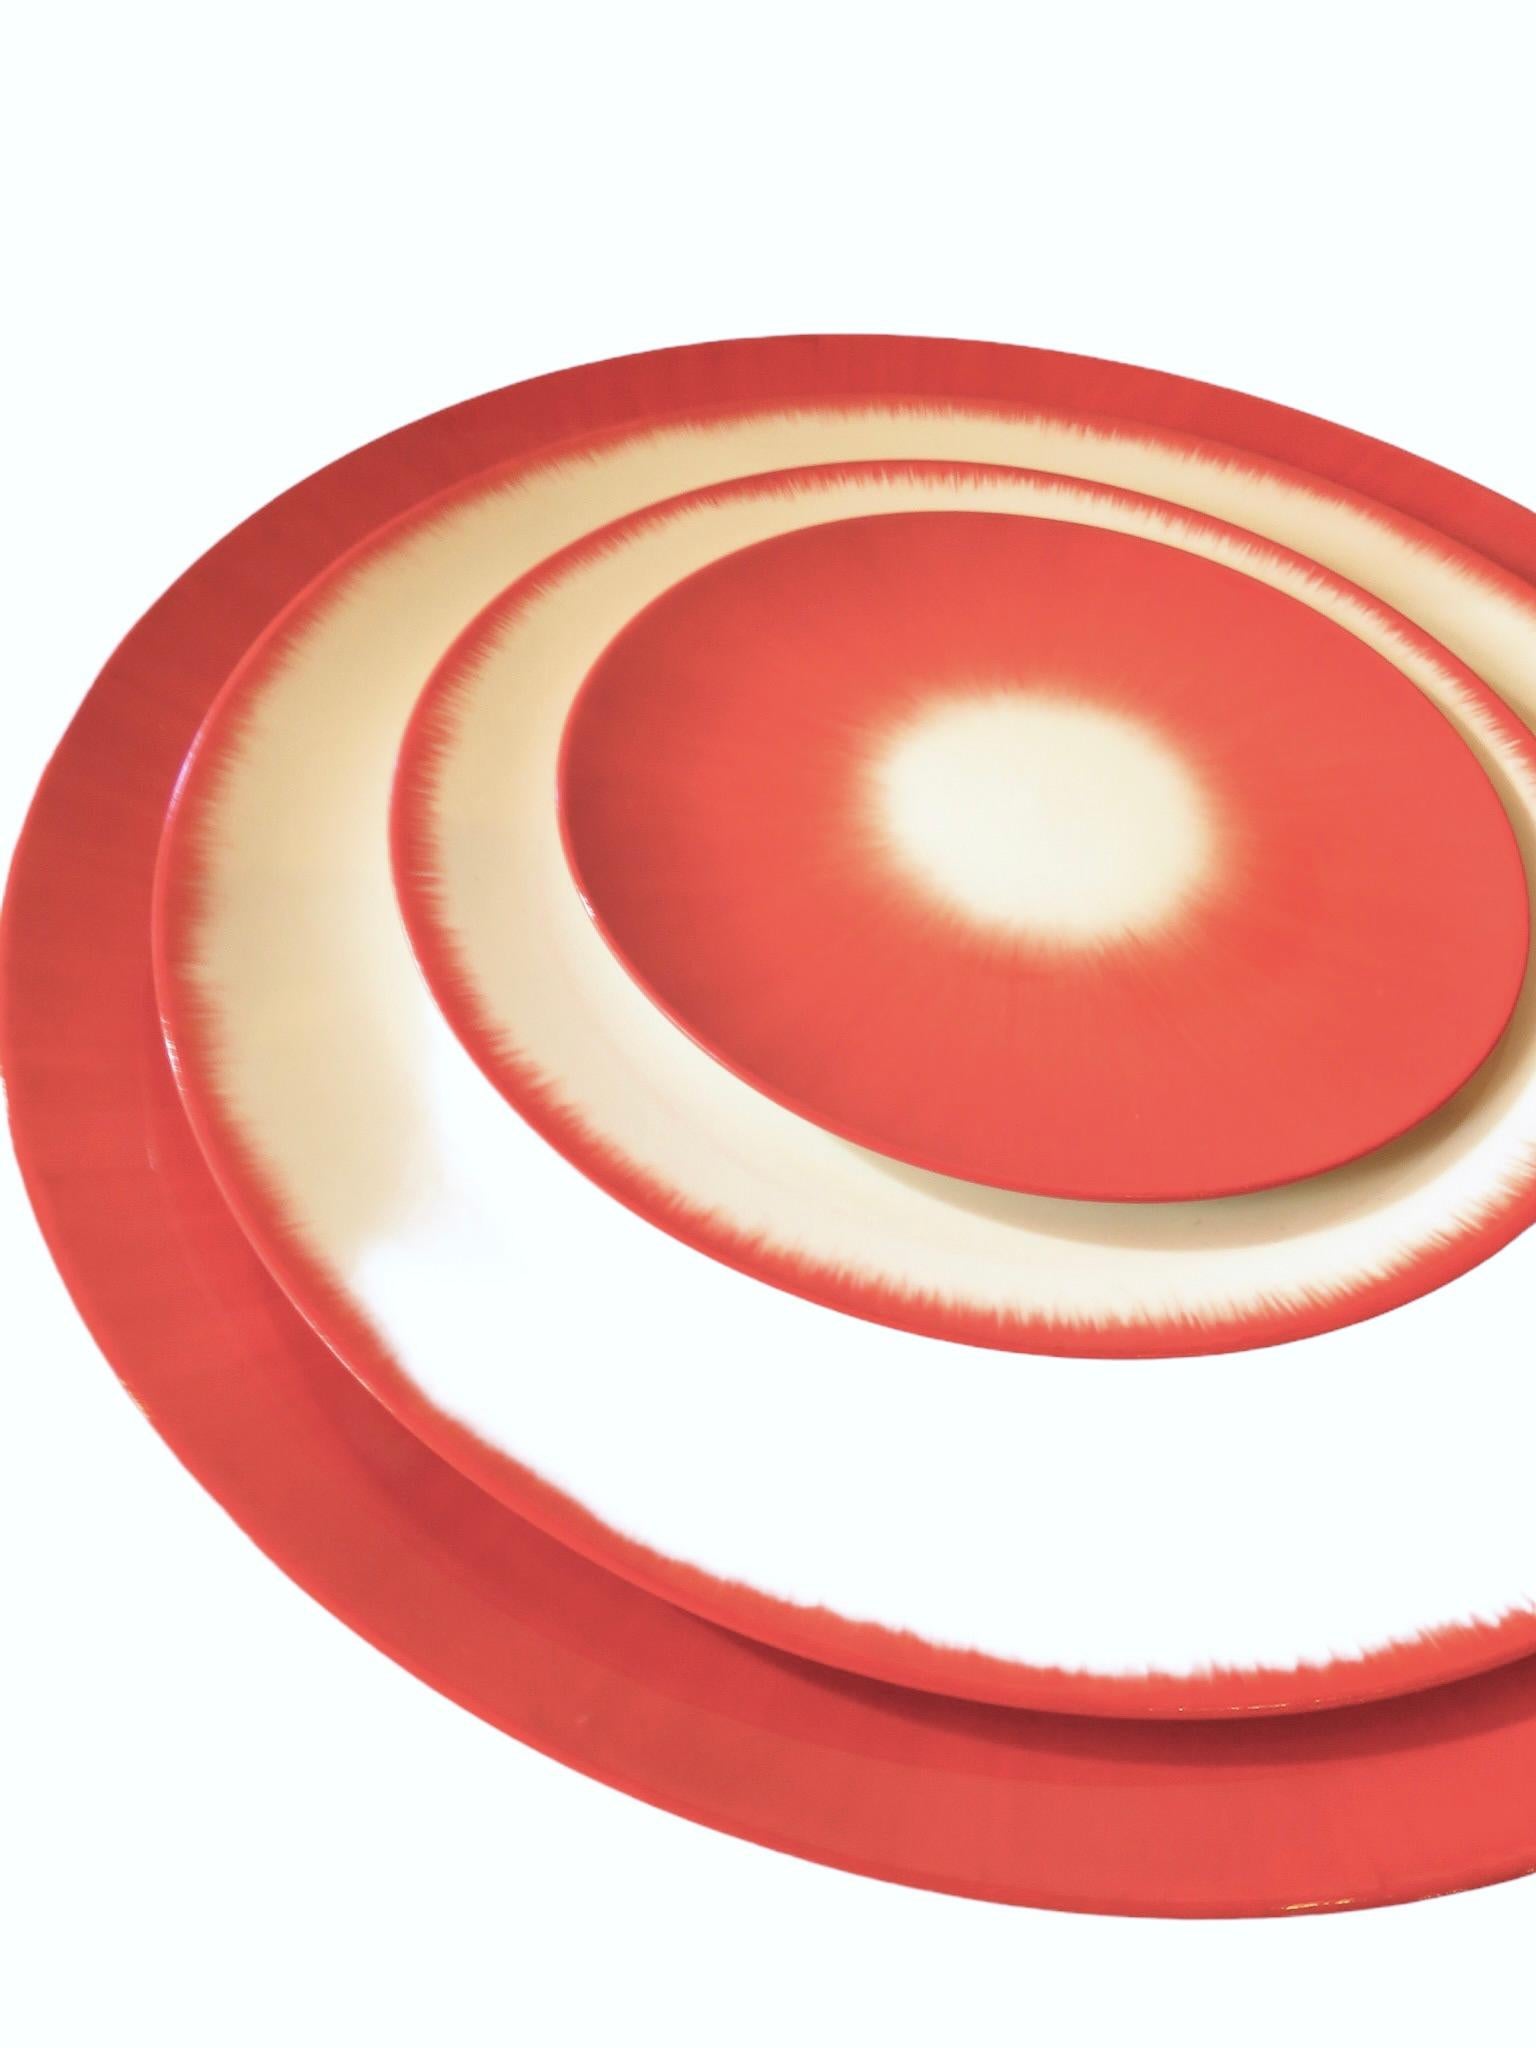 Ann Ann Demeulemeester für Serax, 14 cm rote Teller (Set von zwei) (Rot) im Angebot